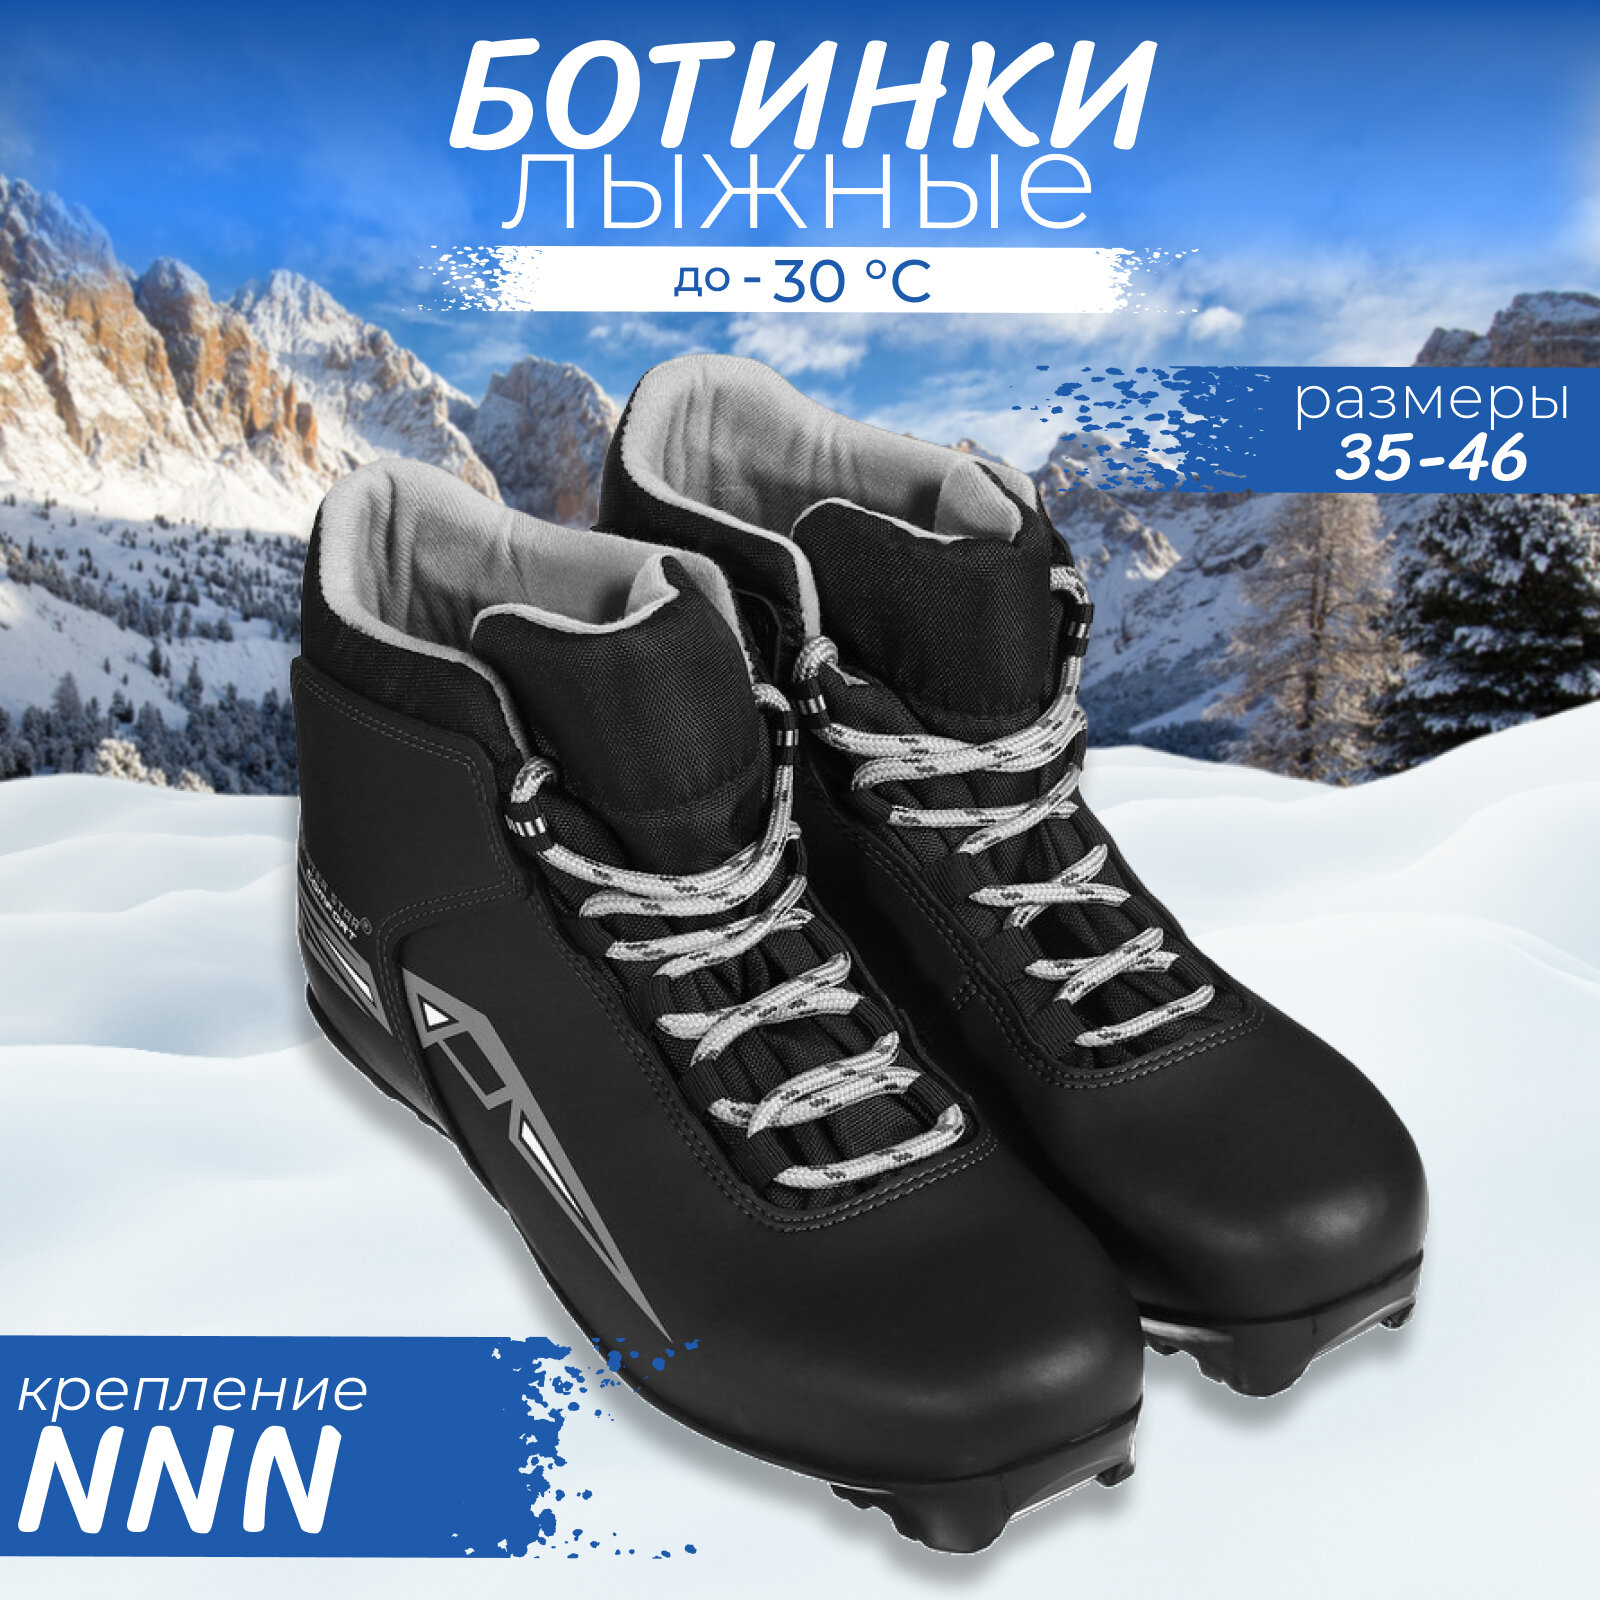 Ботинки лыжные Winter Star comfort NNN р. 46 цвет чёрный лого серый